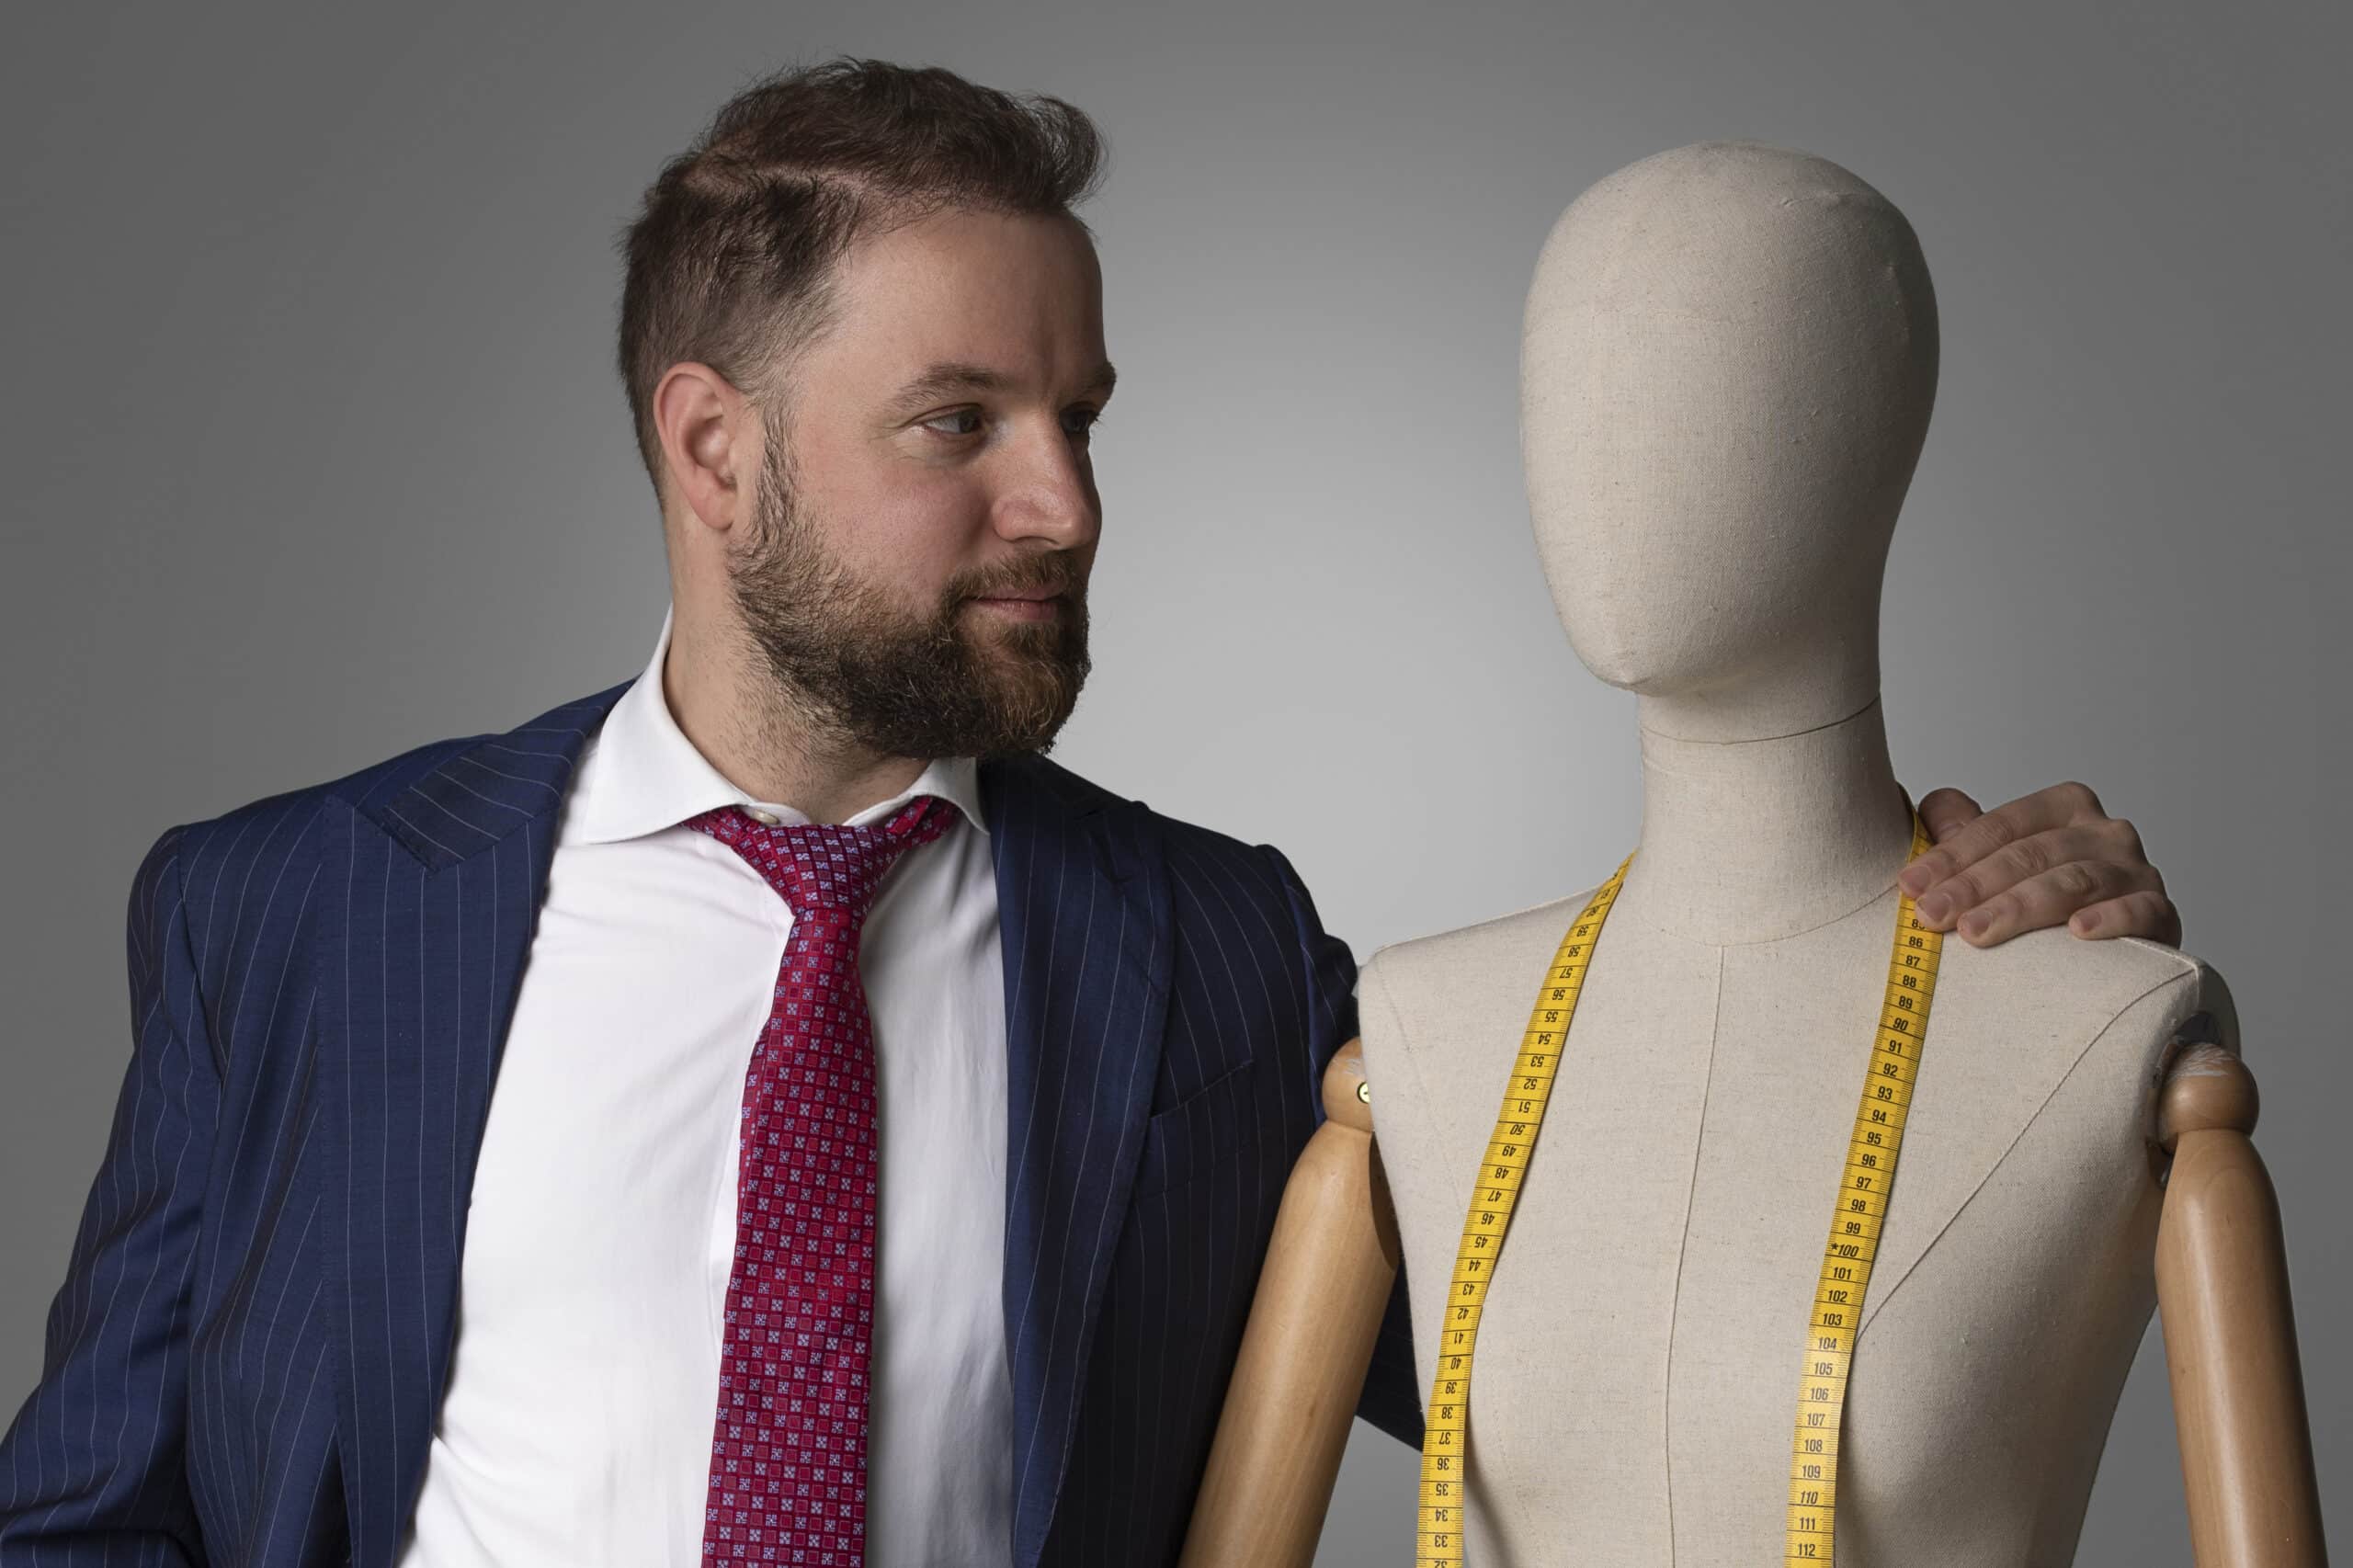 Un uomo in abito è in piedi accanto a un manichino, che mostra il suo marchio di moda.